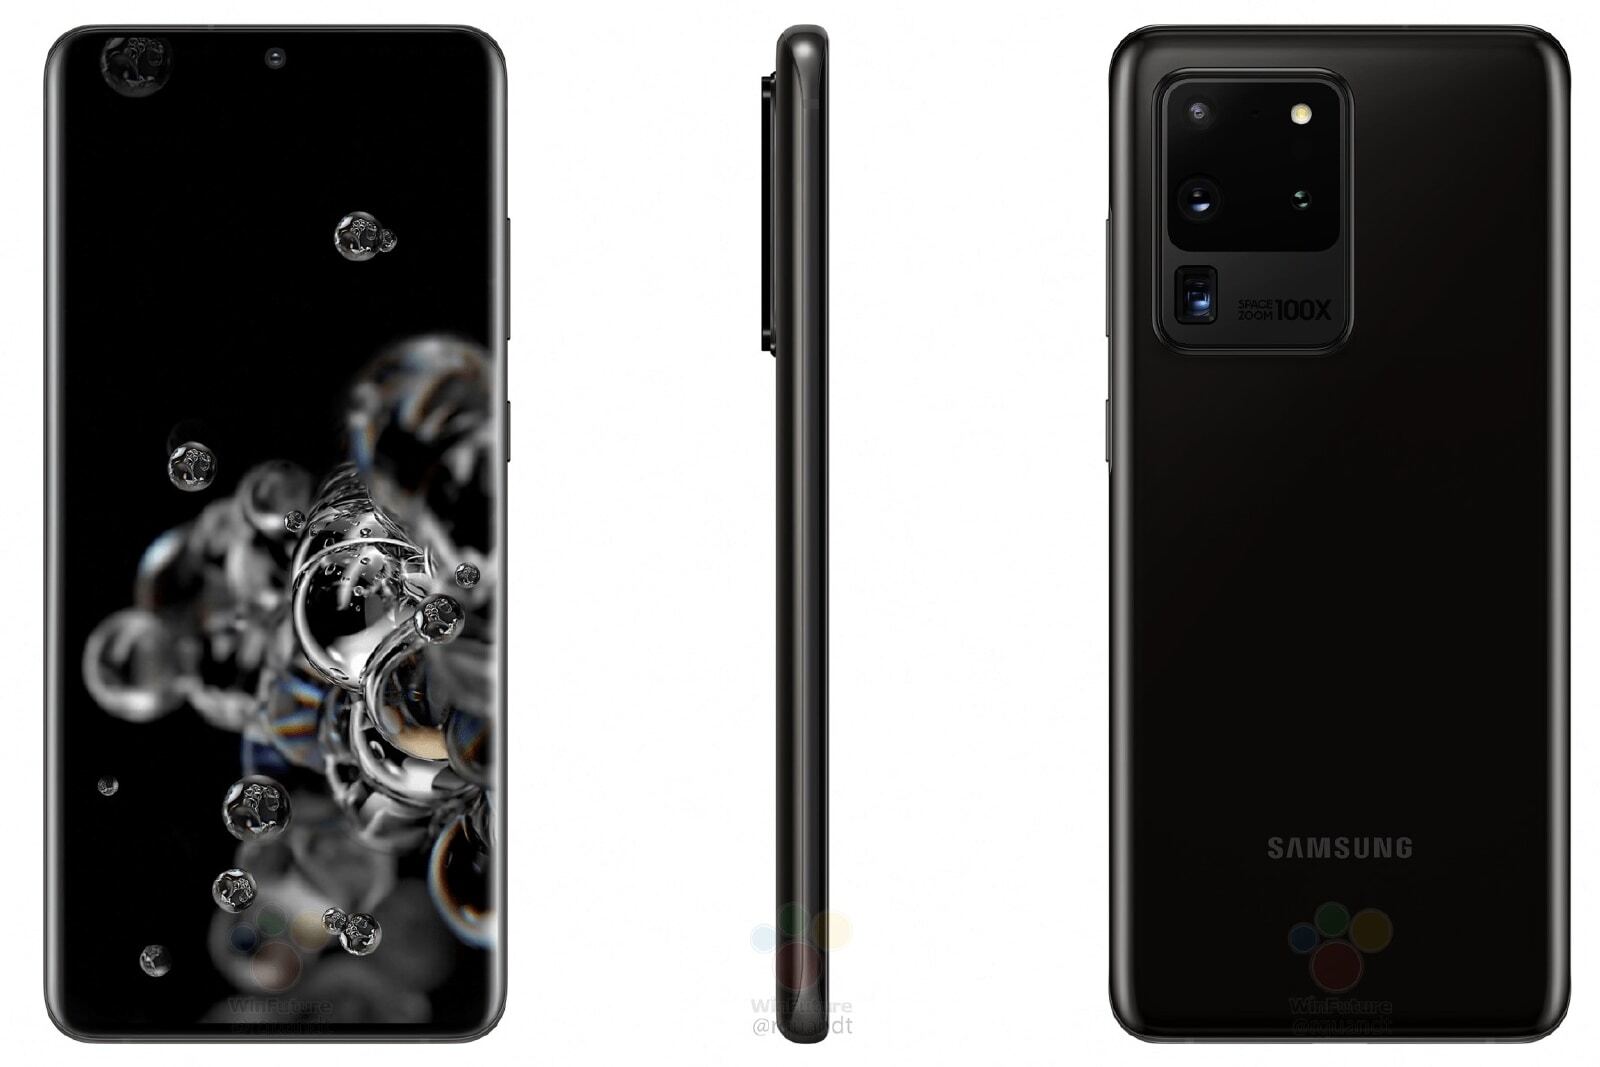 Samsung galaxy s20 ultra